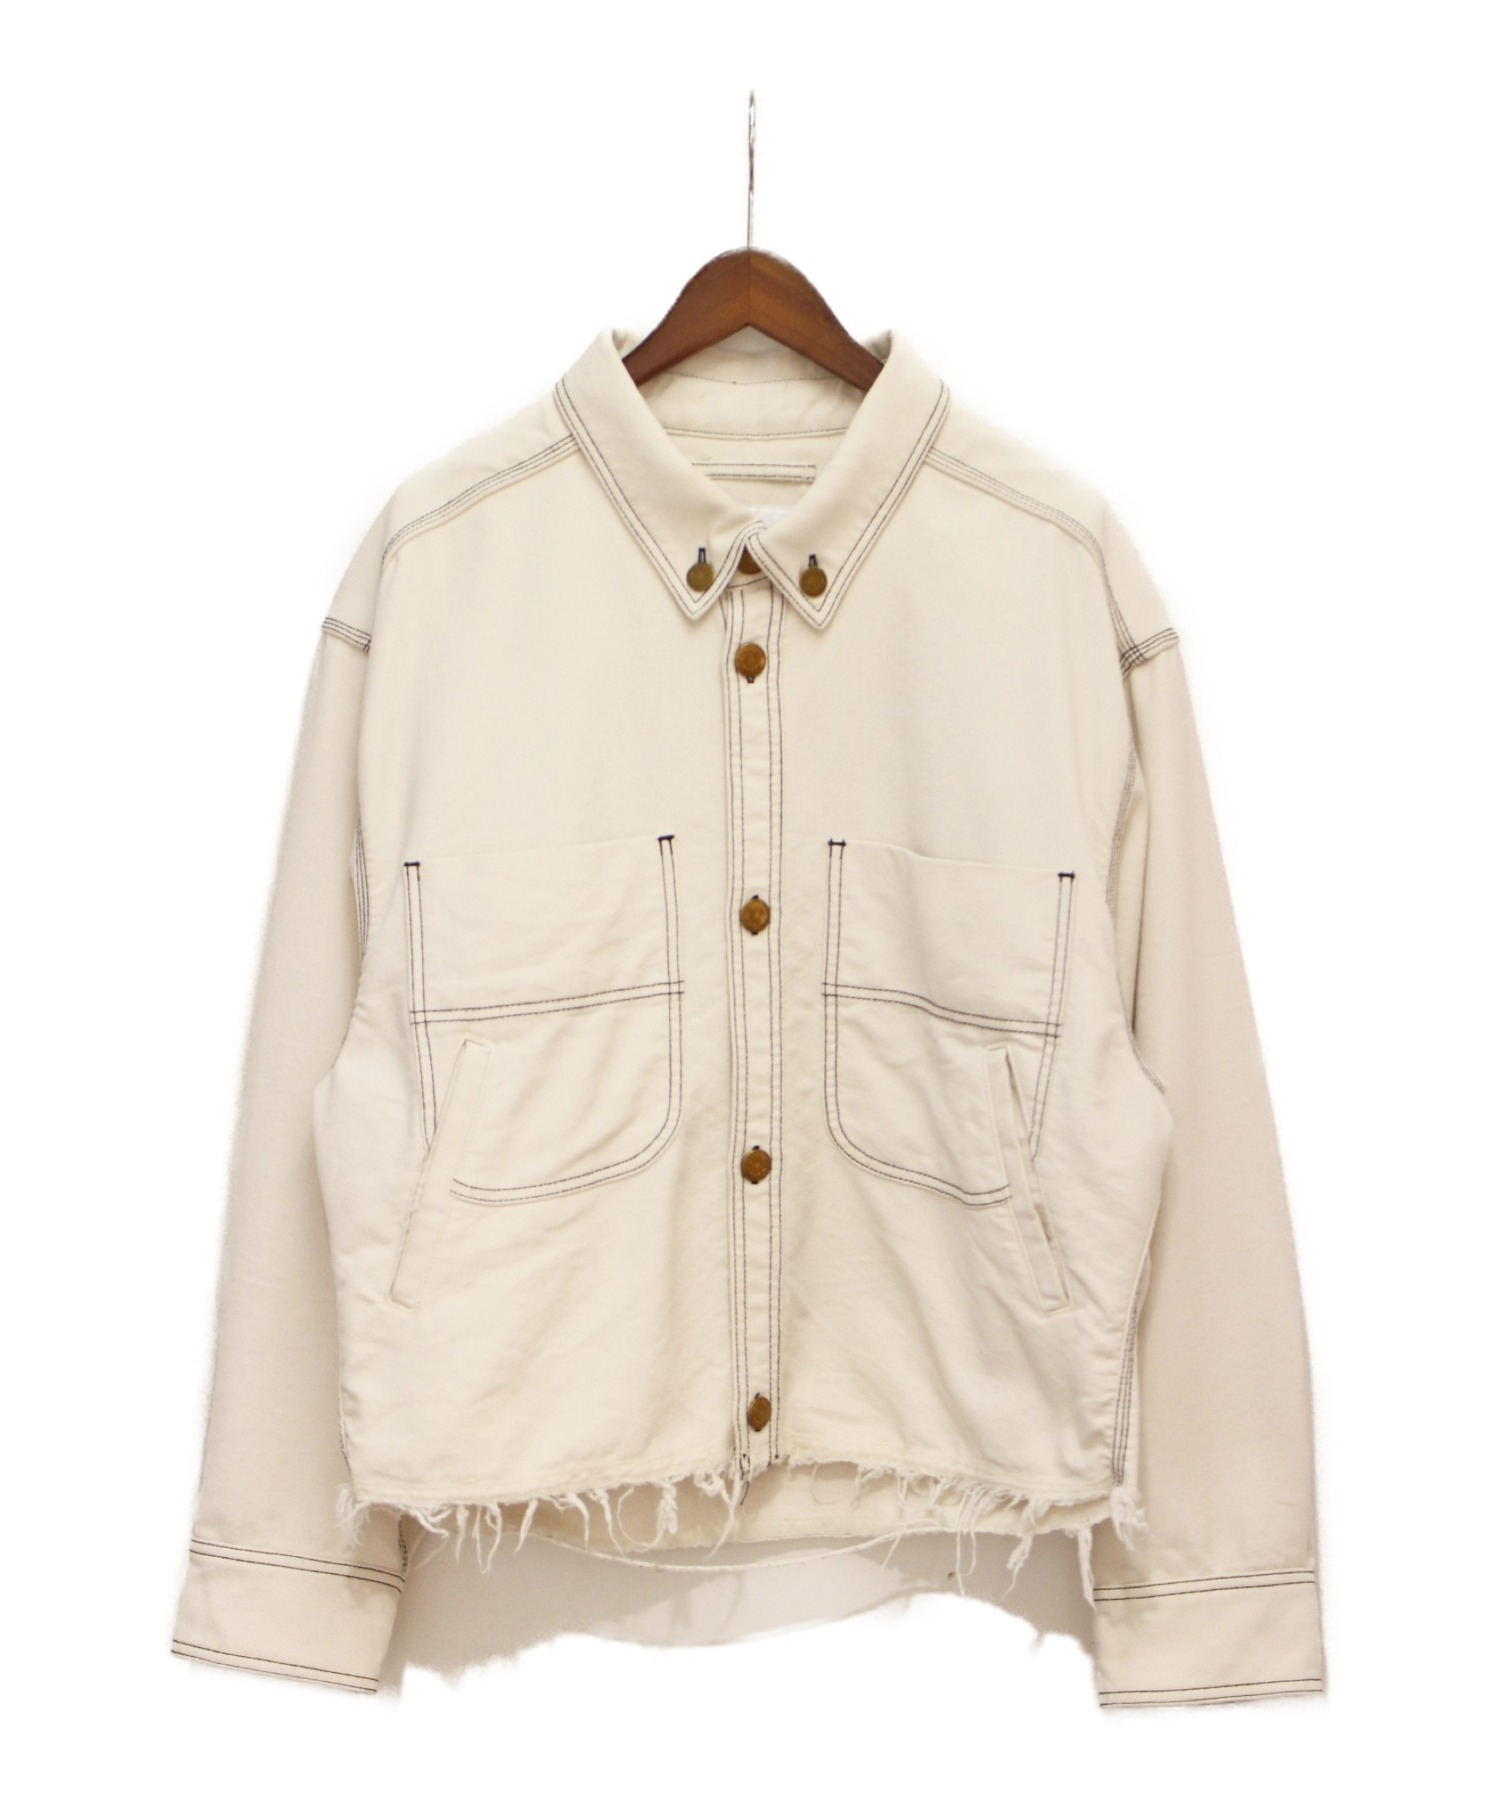 doublet (ダブレット) 20SS カットオフジャケット ホワイト サイズ:S